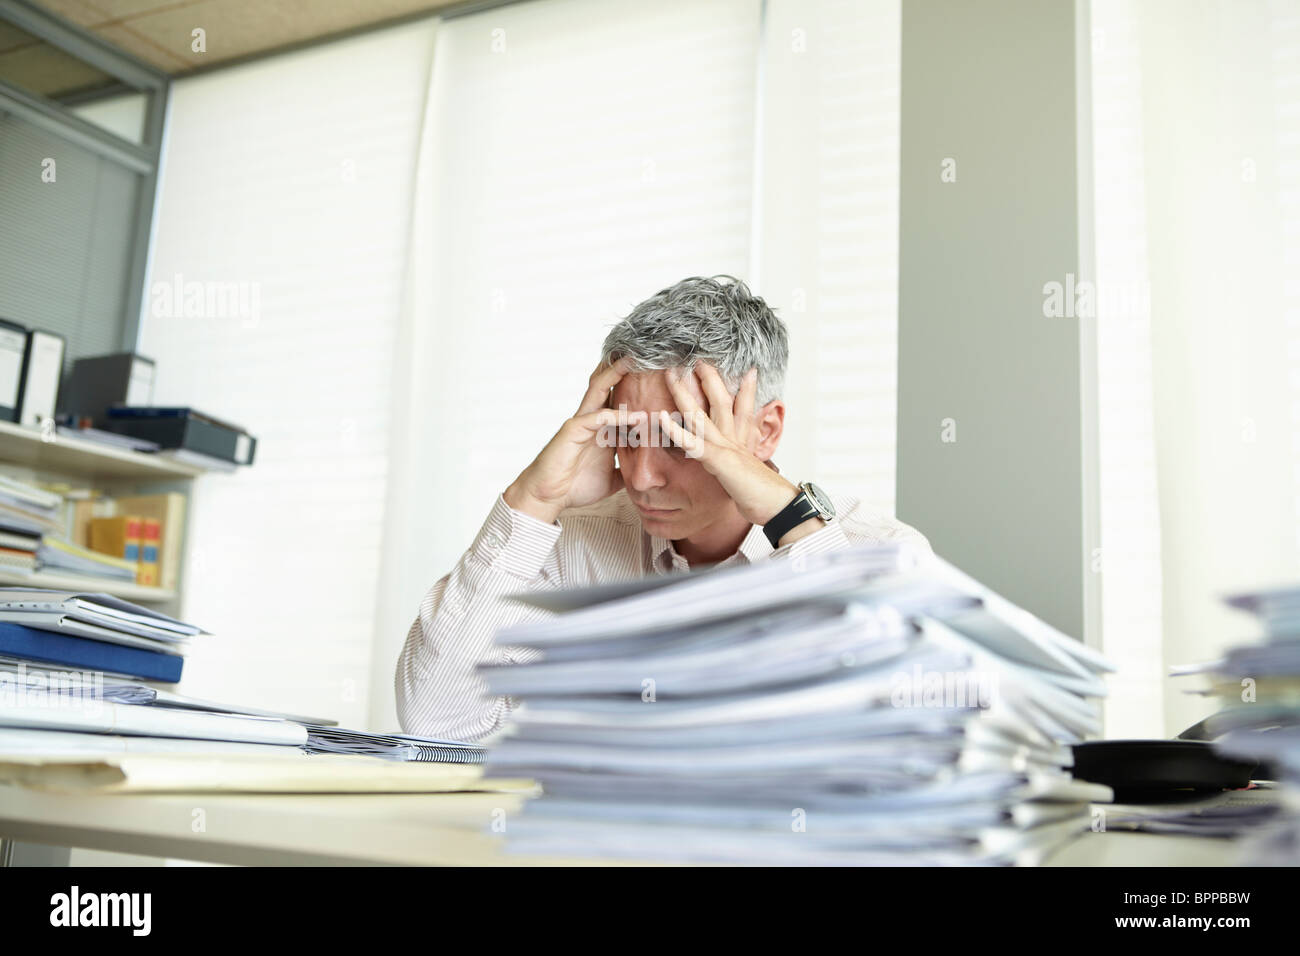 Despondent man behind desk Stock Photo